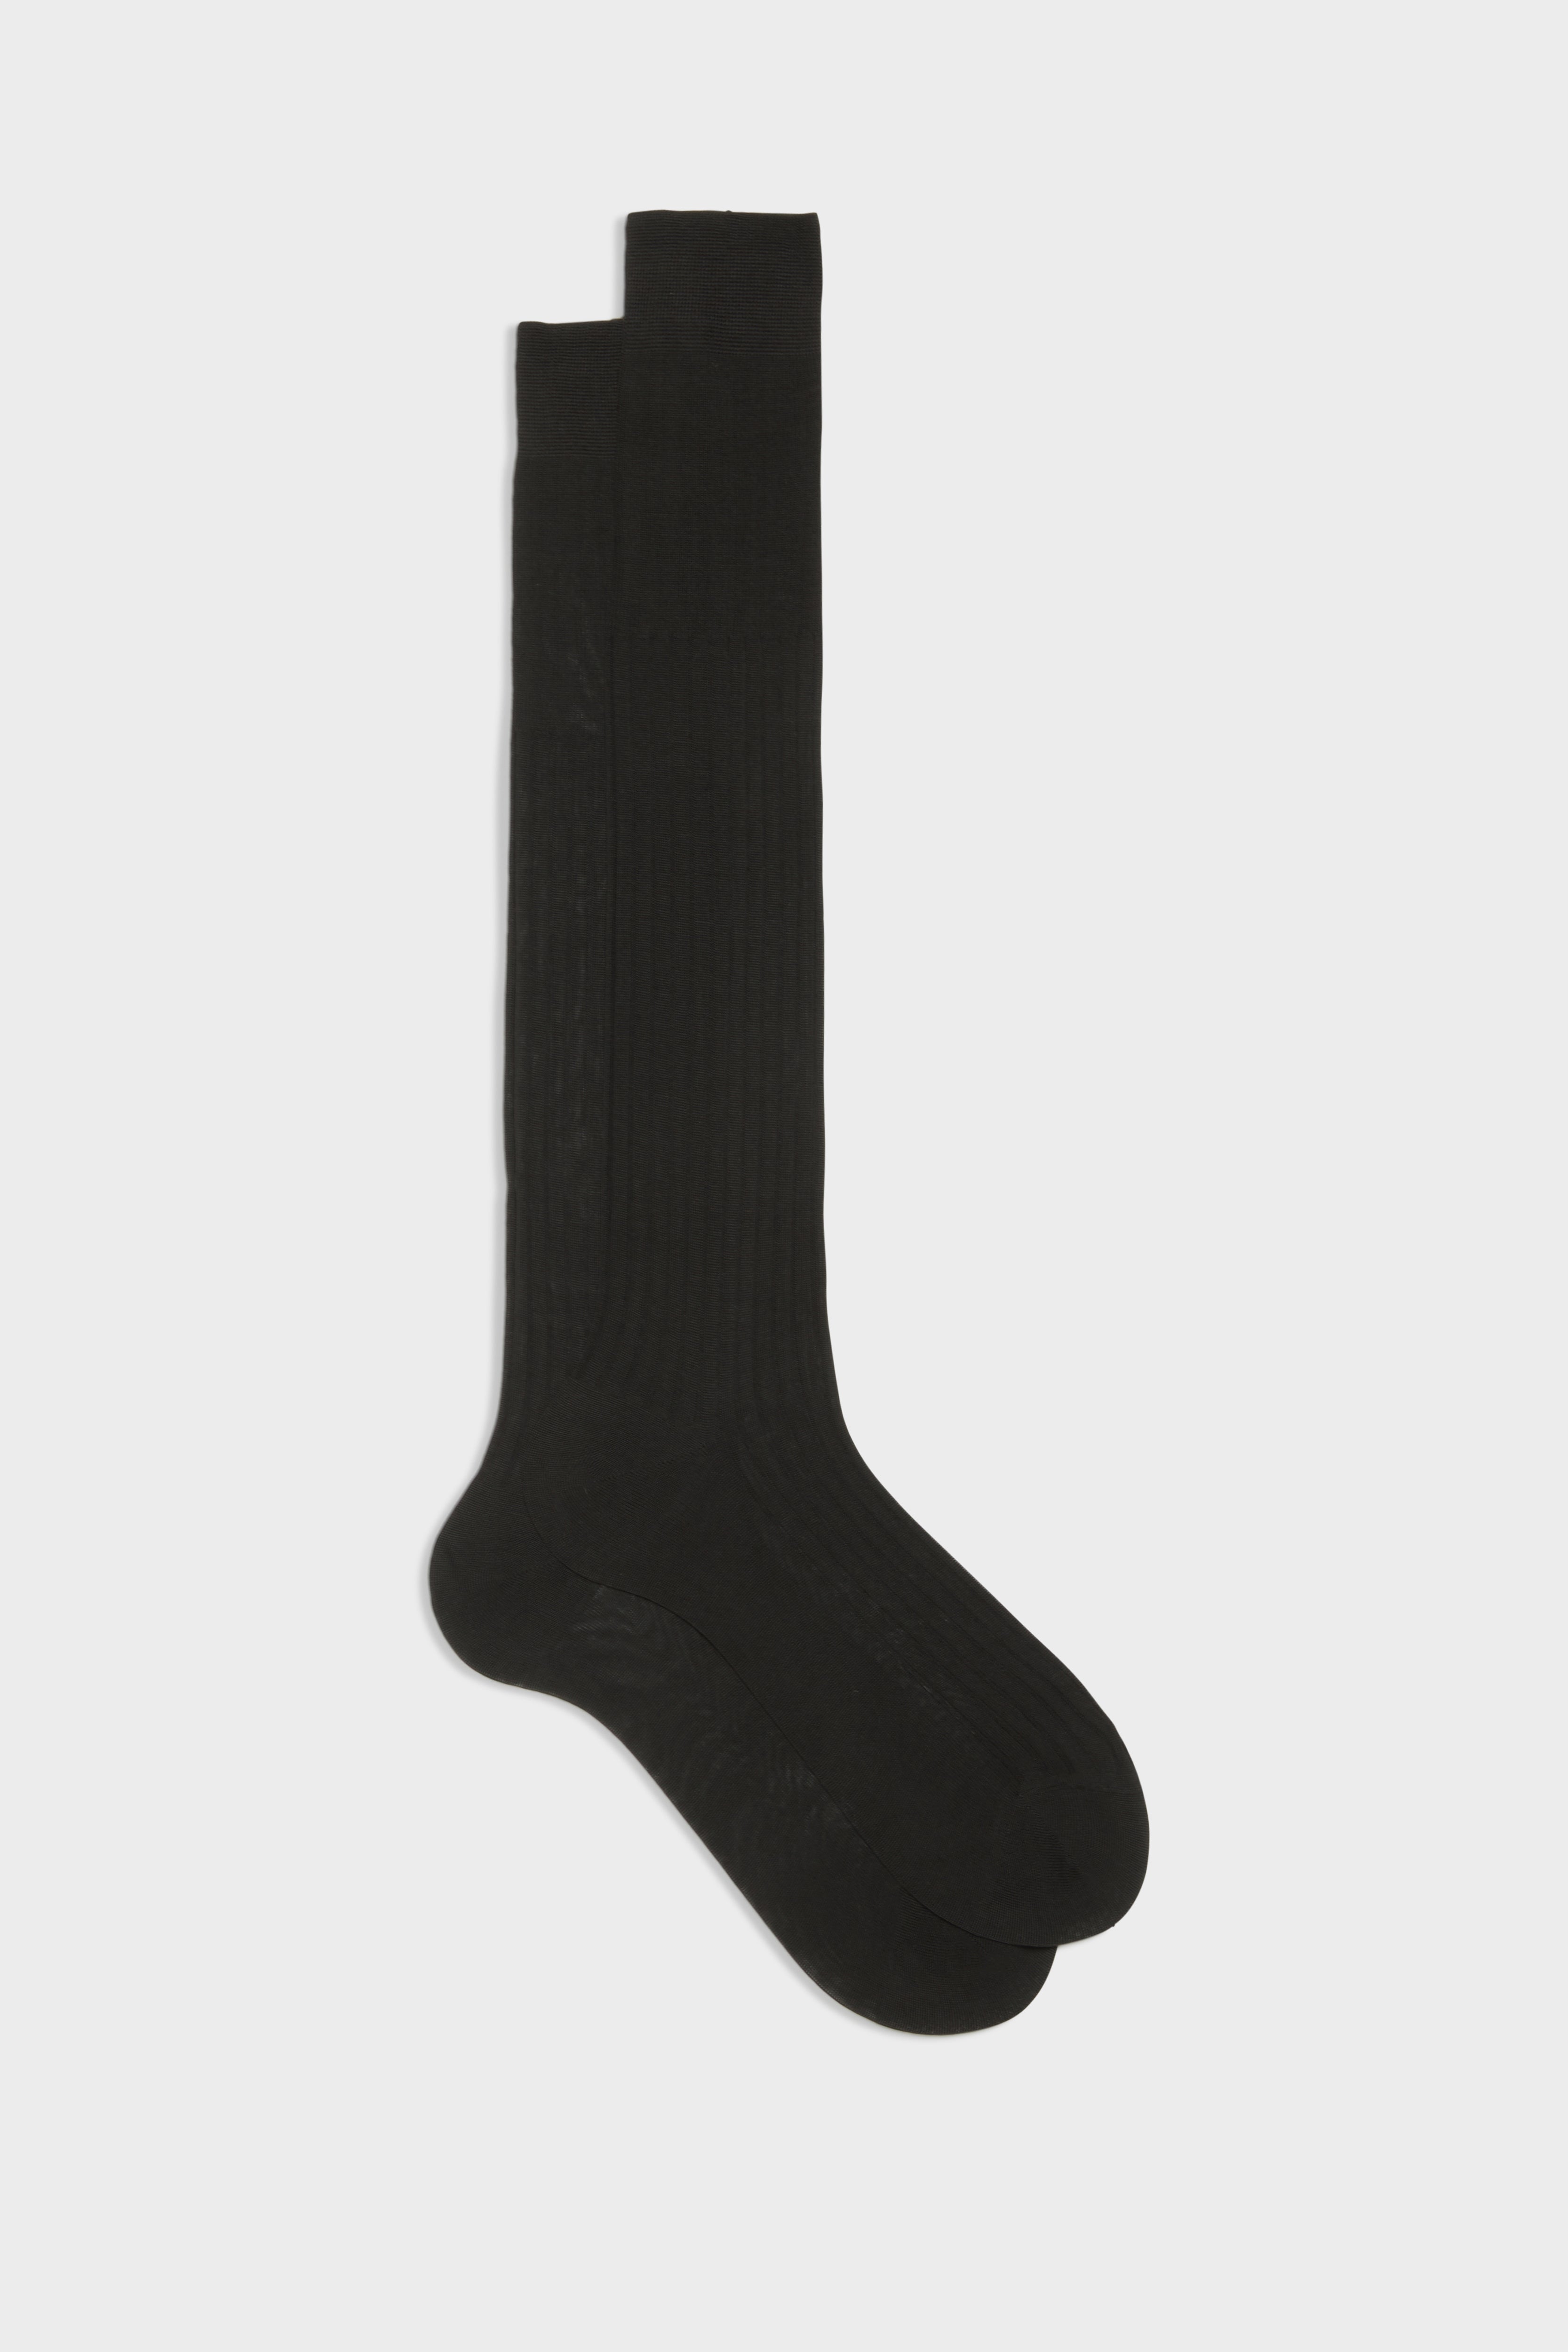 BRESCIANI - men's socks:Cesare style. Cotton. Black – Bresciani Shop